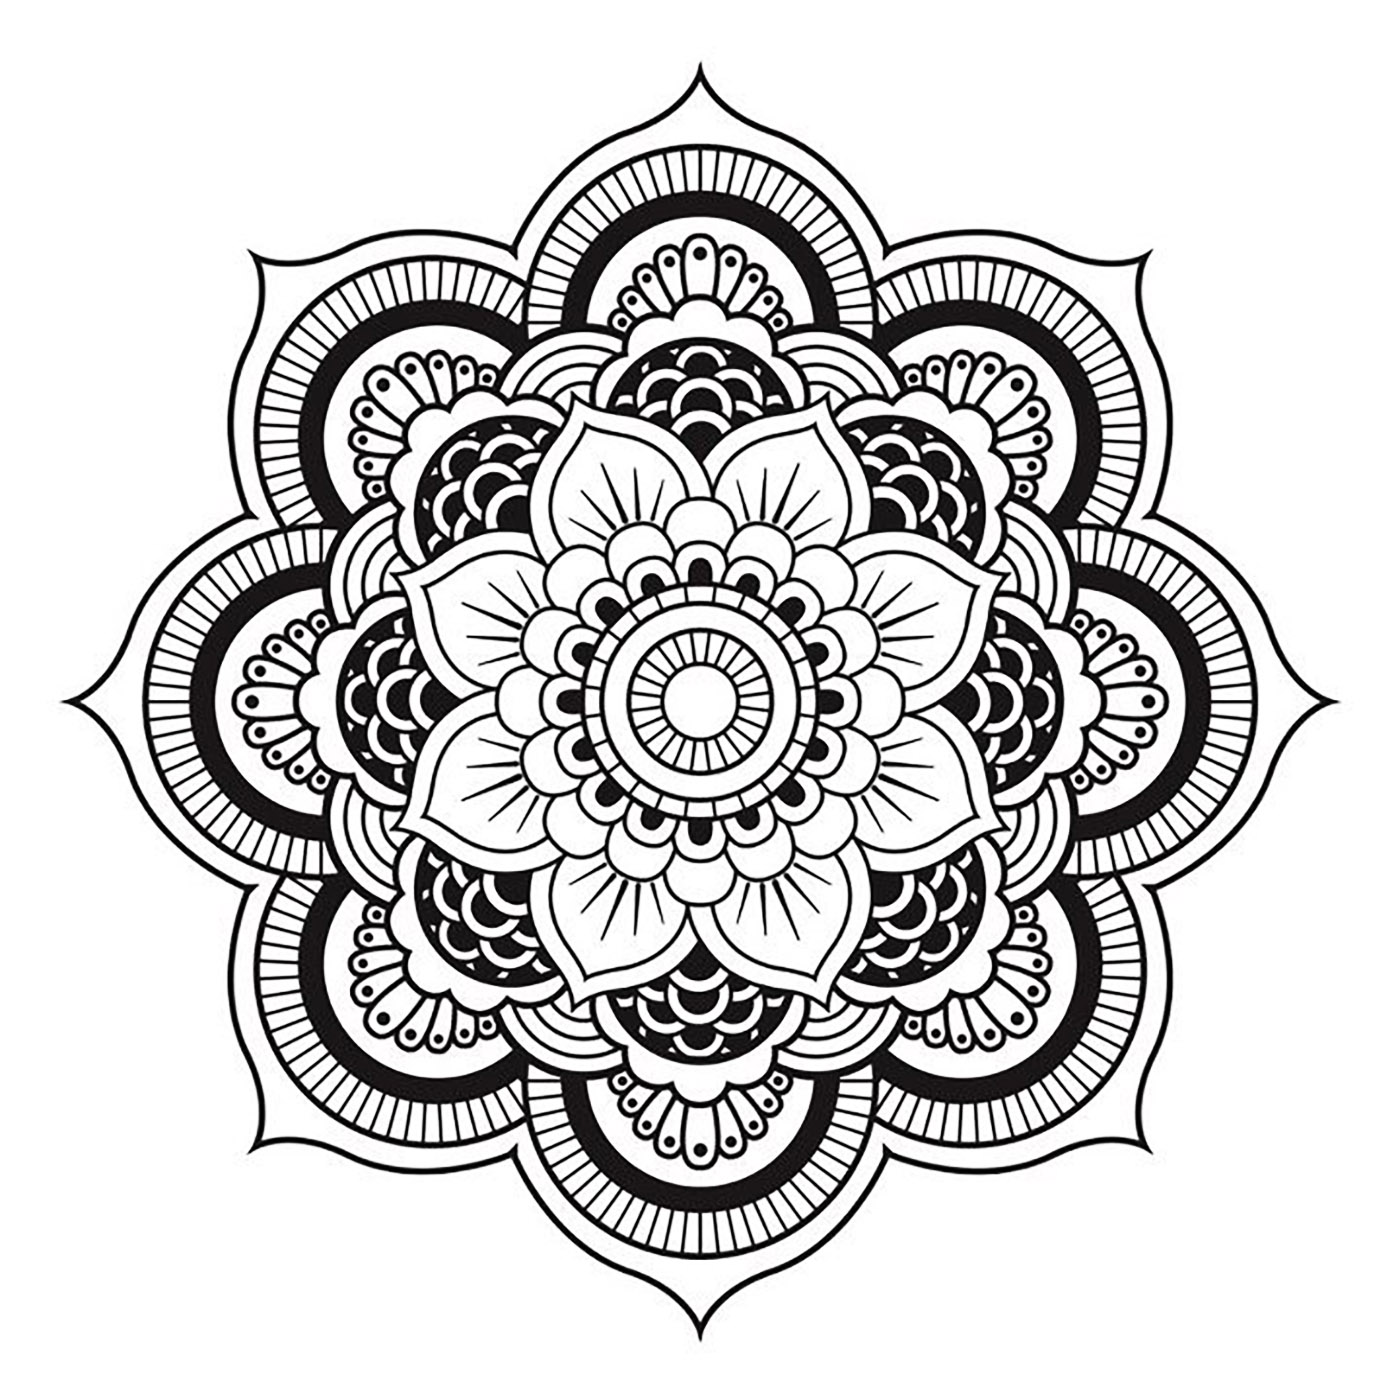 Mandala simple et régulier, adapté pour un tatouage sur l'épaule